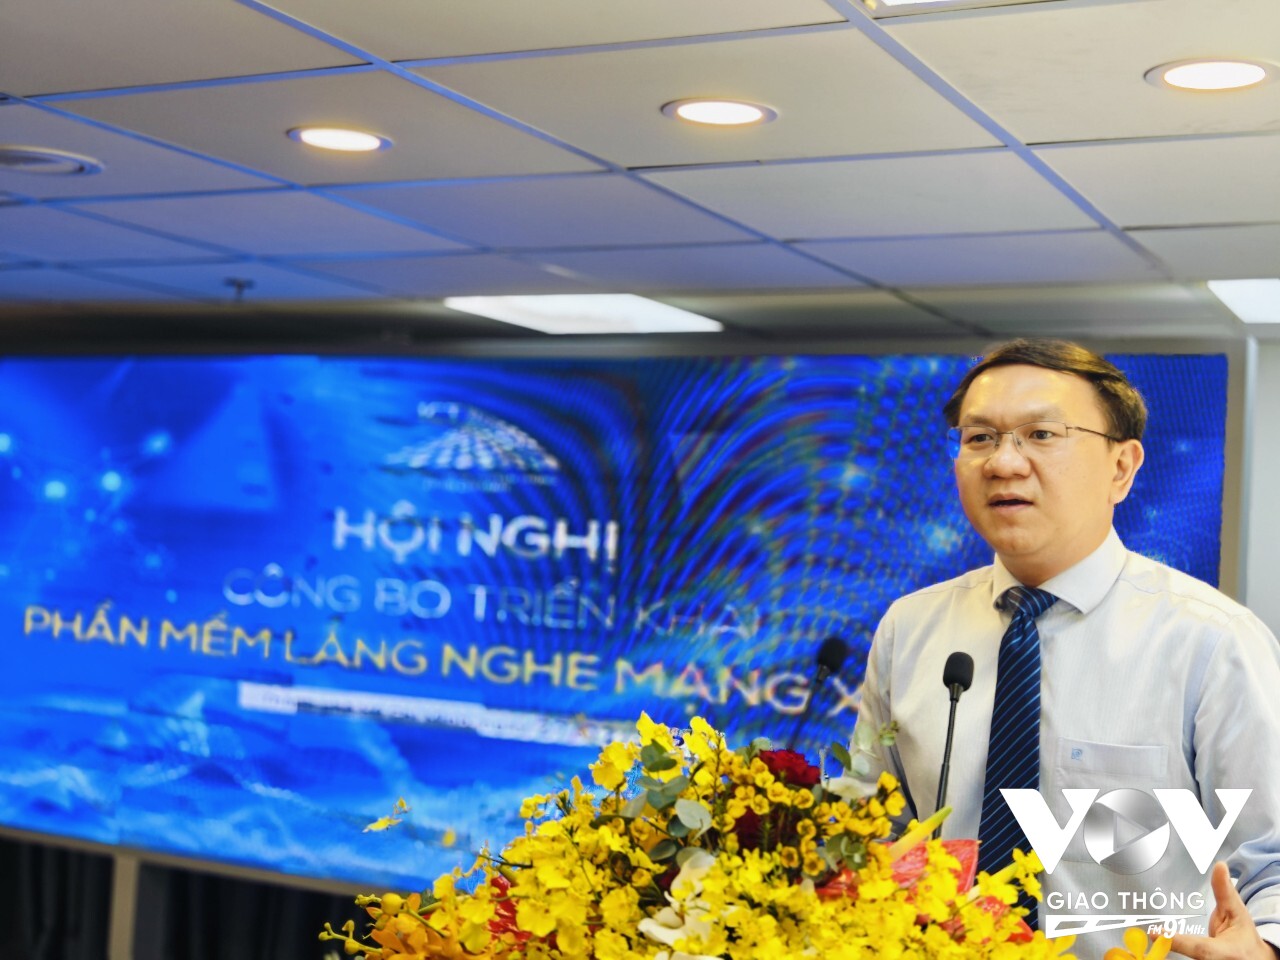 Ông Lâm Đình Thắng - Giám đốc Sở TTTT TPHCM công bố đưa vào hoạt động phần mềm lắng nghe mạng xã hội “HCMC Socialbeat”